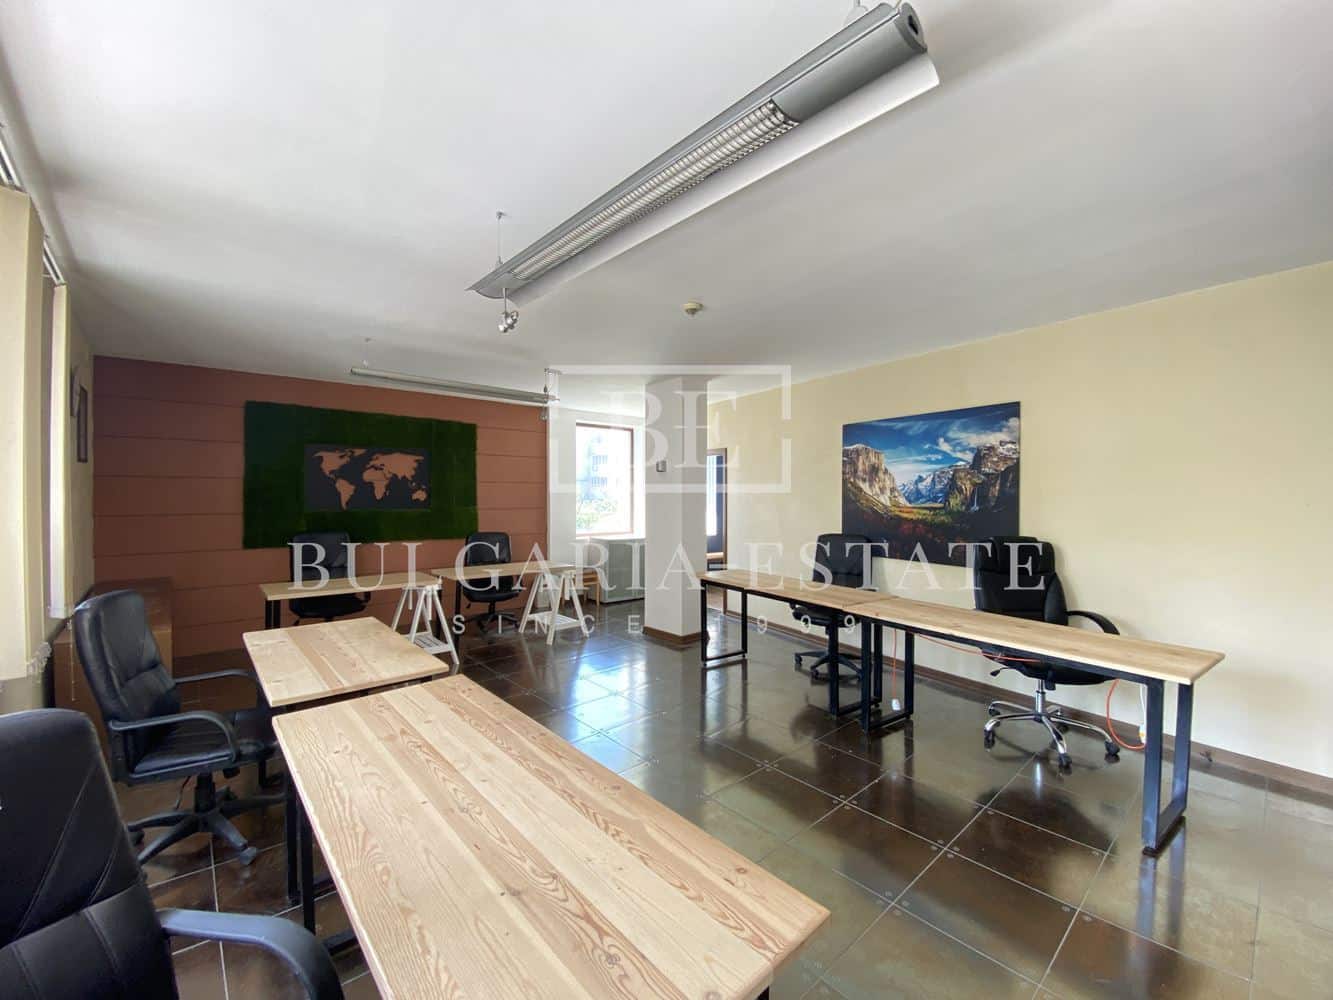 Свободни офис площи в офис сграда с включени всички месечни разходи, ТОК, ИНТЕРНЕТ, КАФЕ И ВОДА, ТОП ЛОКАЦИЯ - 0